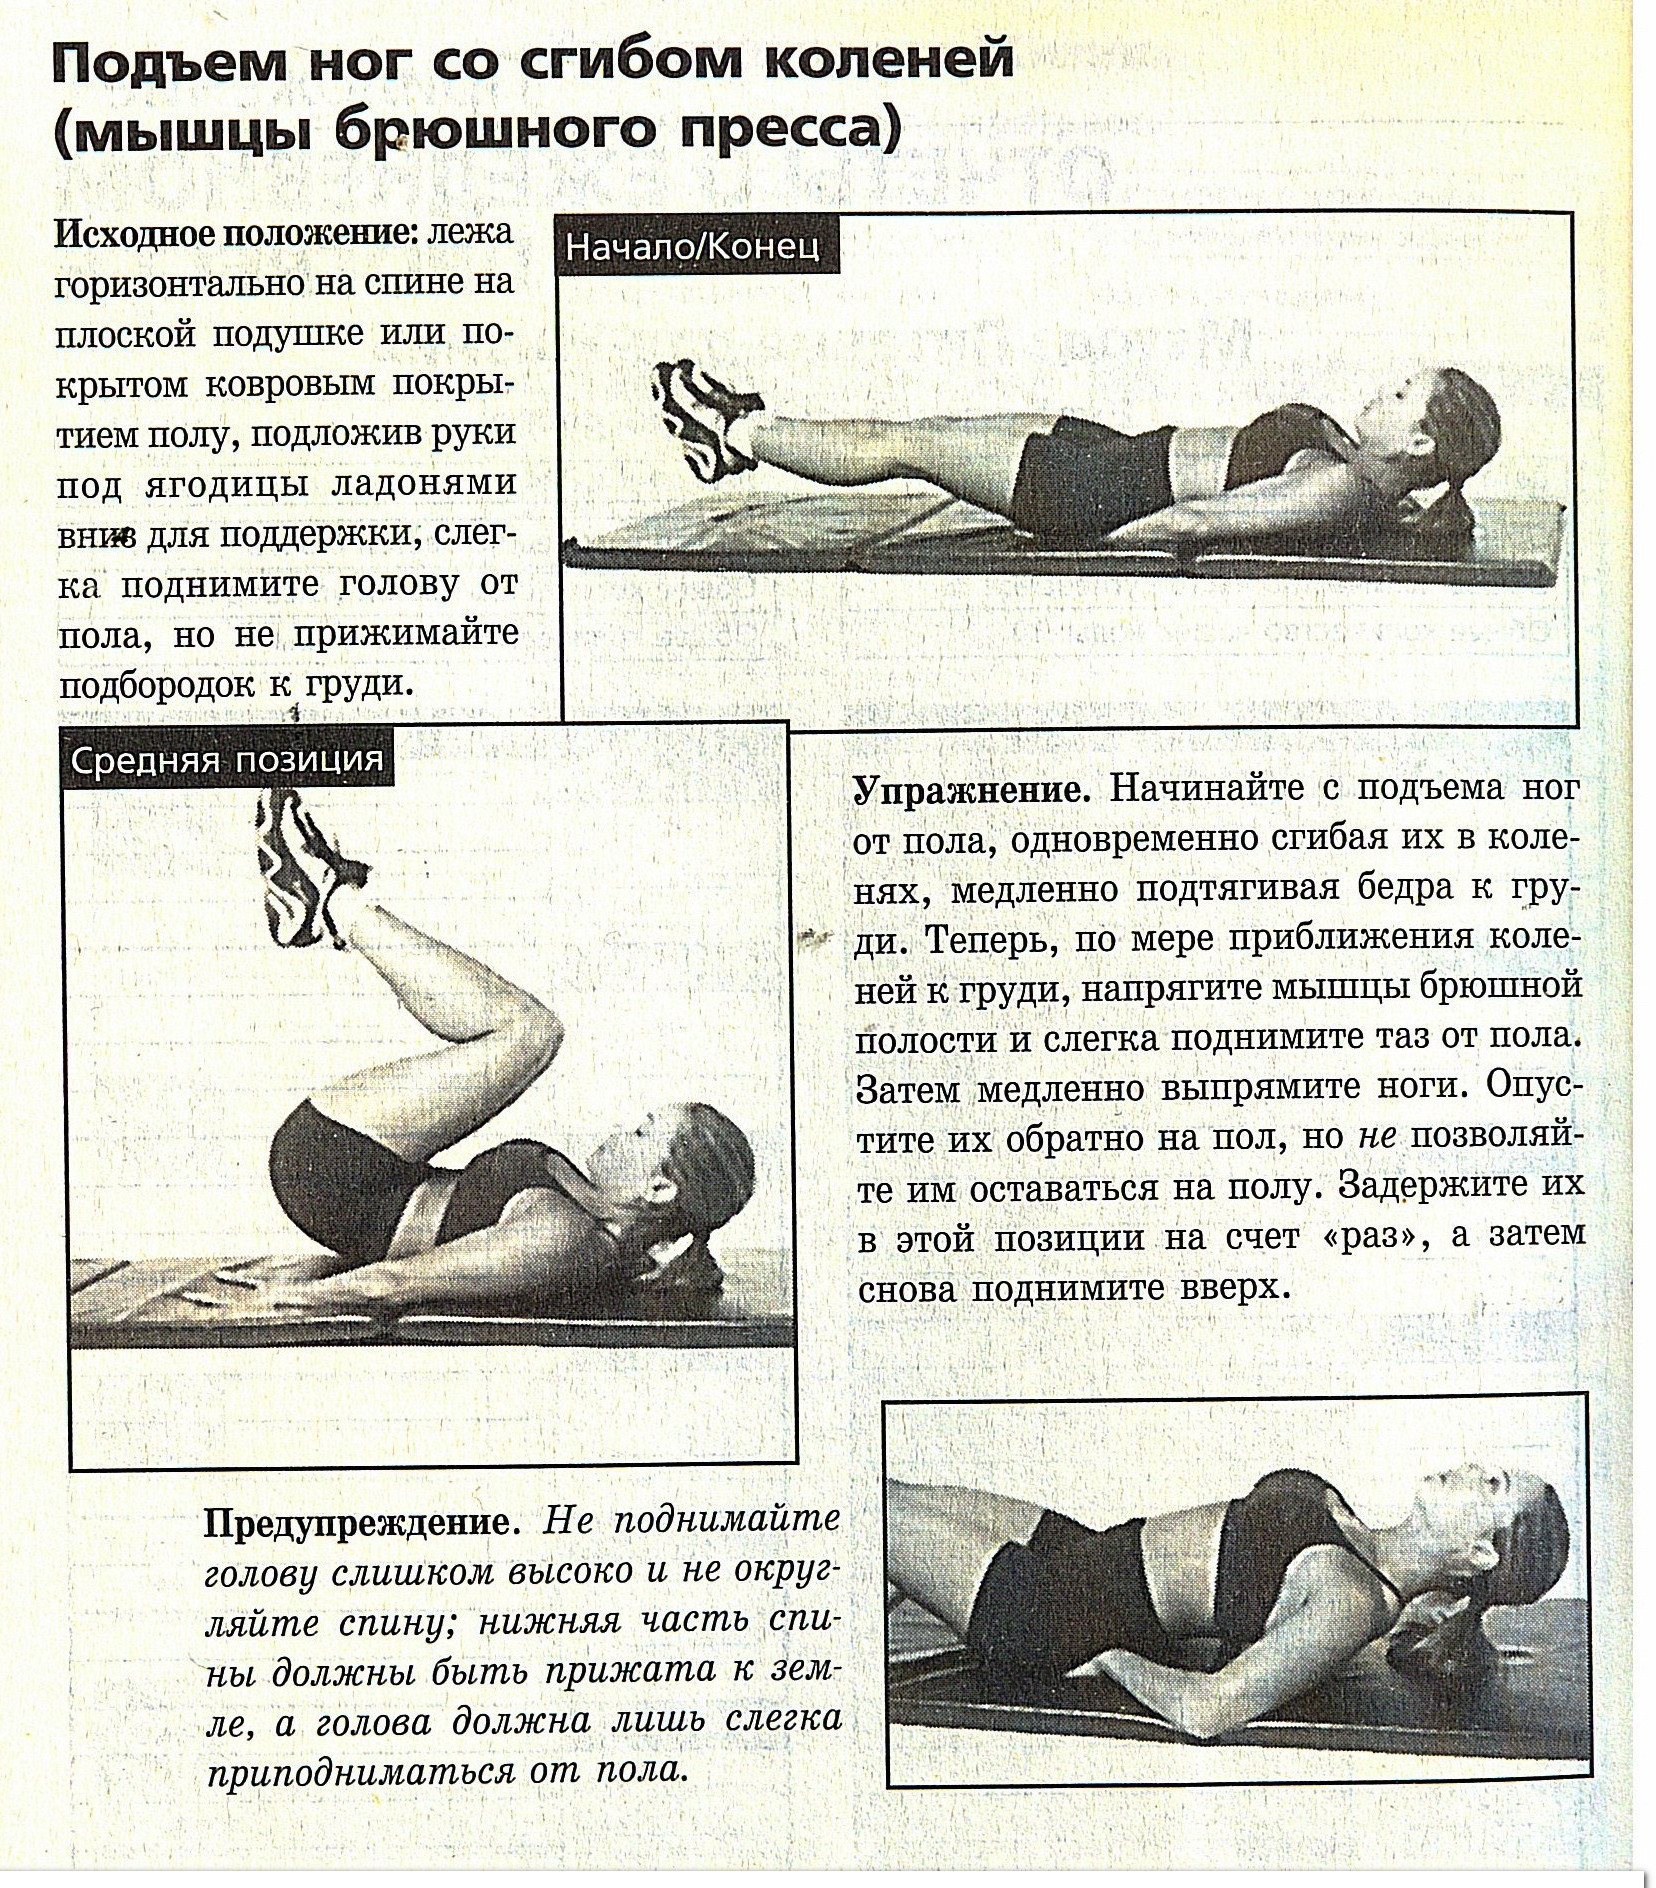 Упражнения для мышц живота и спины